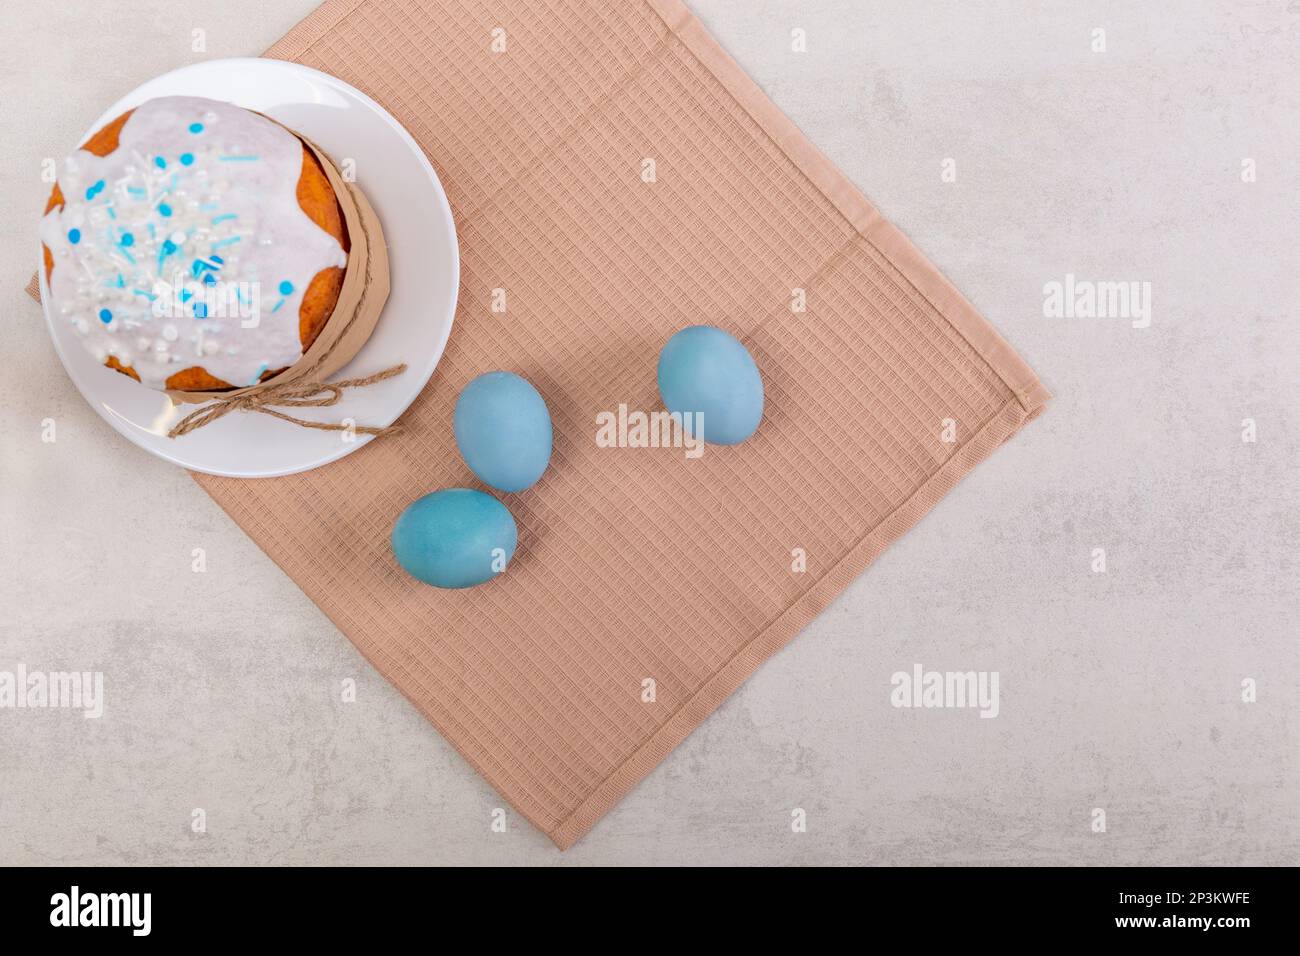 Pasqua torta russa e uova colorate su un tovagliolo, su un tavolo leggero. Buon poster di pasqua e banner per il testo di saluto. Vista dall'alto Foto Stock